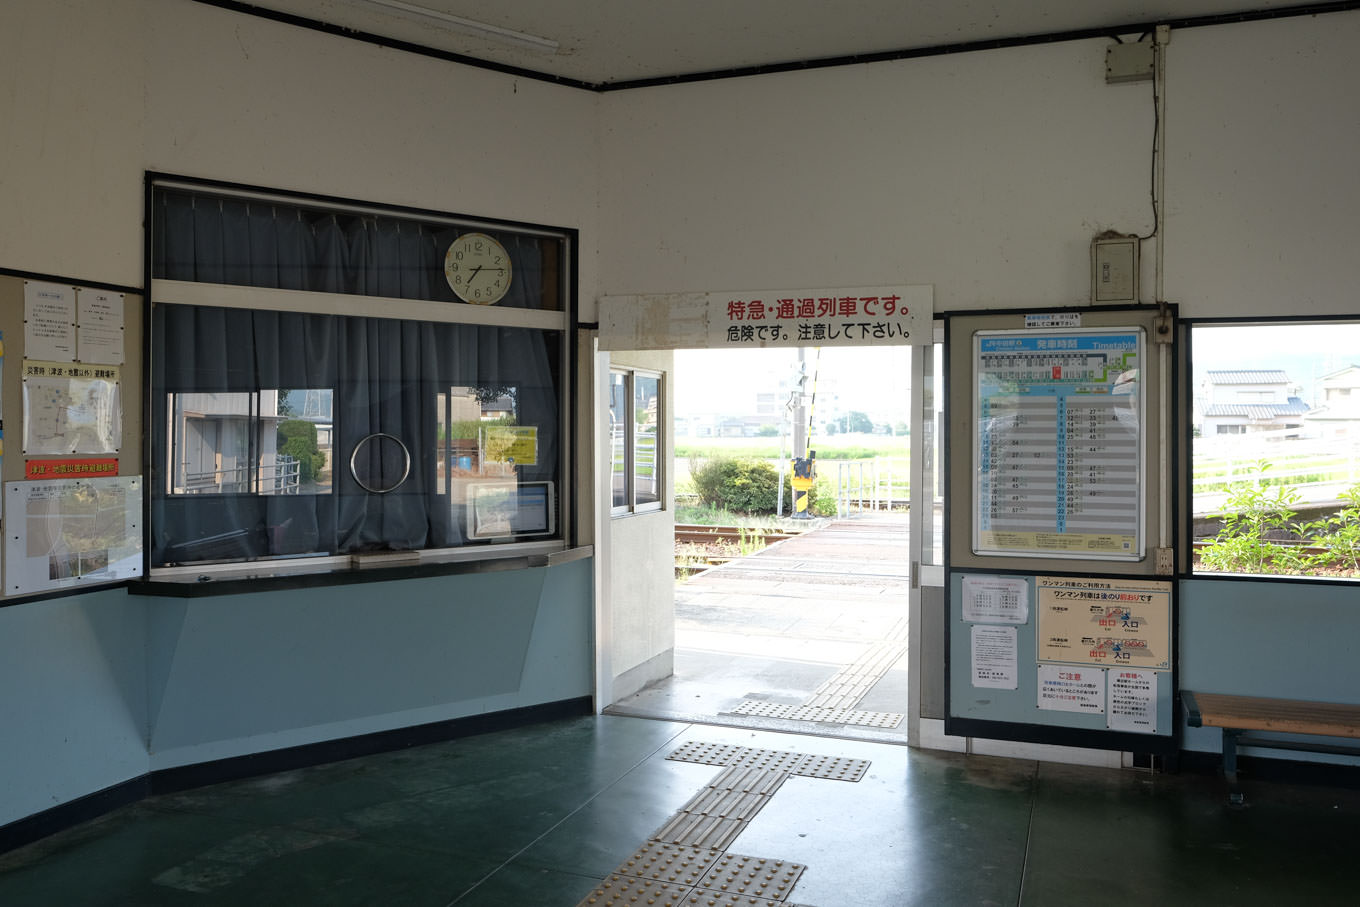 中田駅の窓口と改札口。